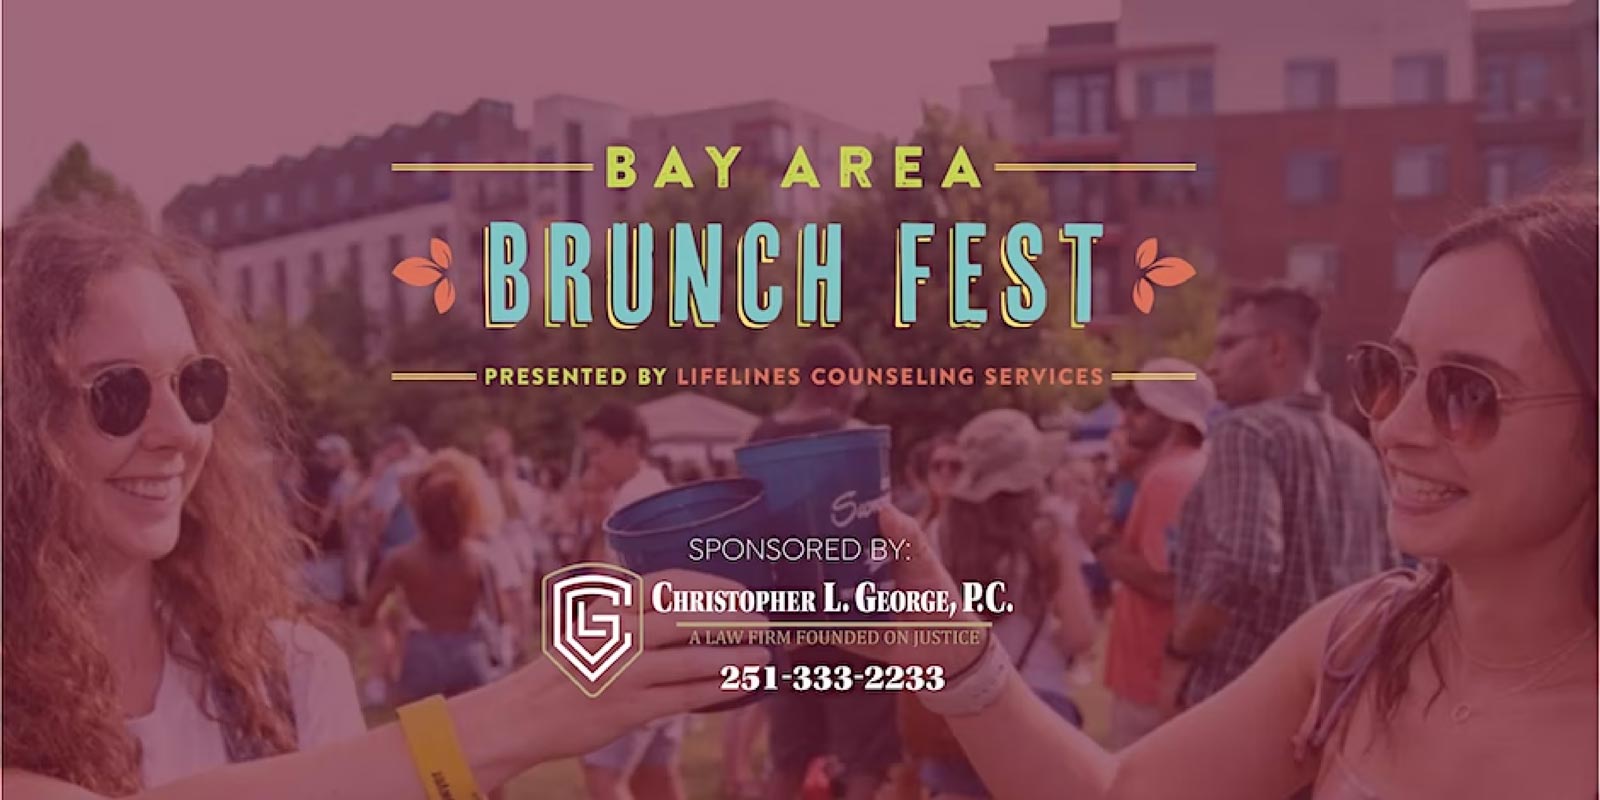 Bay Area Brunch Fest Coming Up